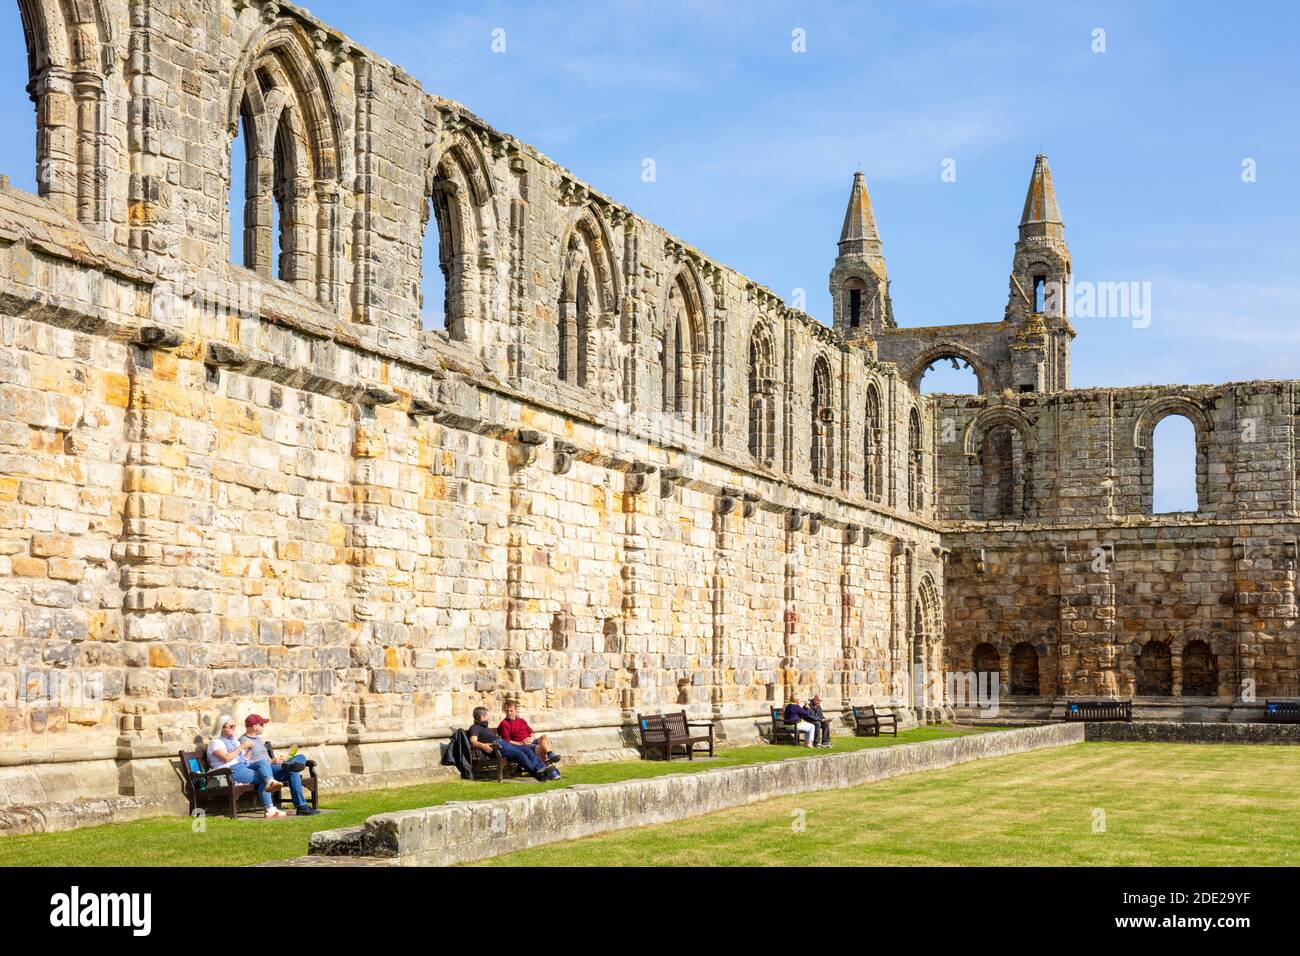 Ruines de la cathédrale St Andrews Royal Burgh of St Andrews Fife Scotland Royaume-Uni GB Europe Banque D'Images